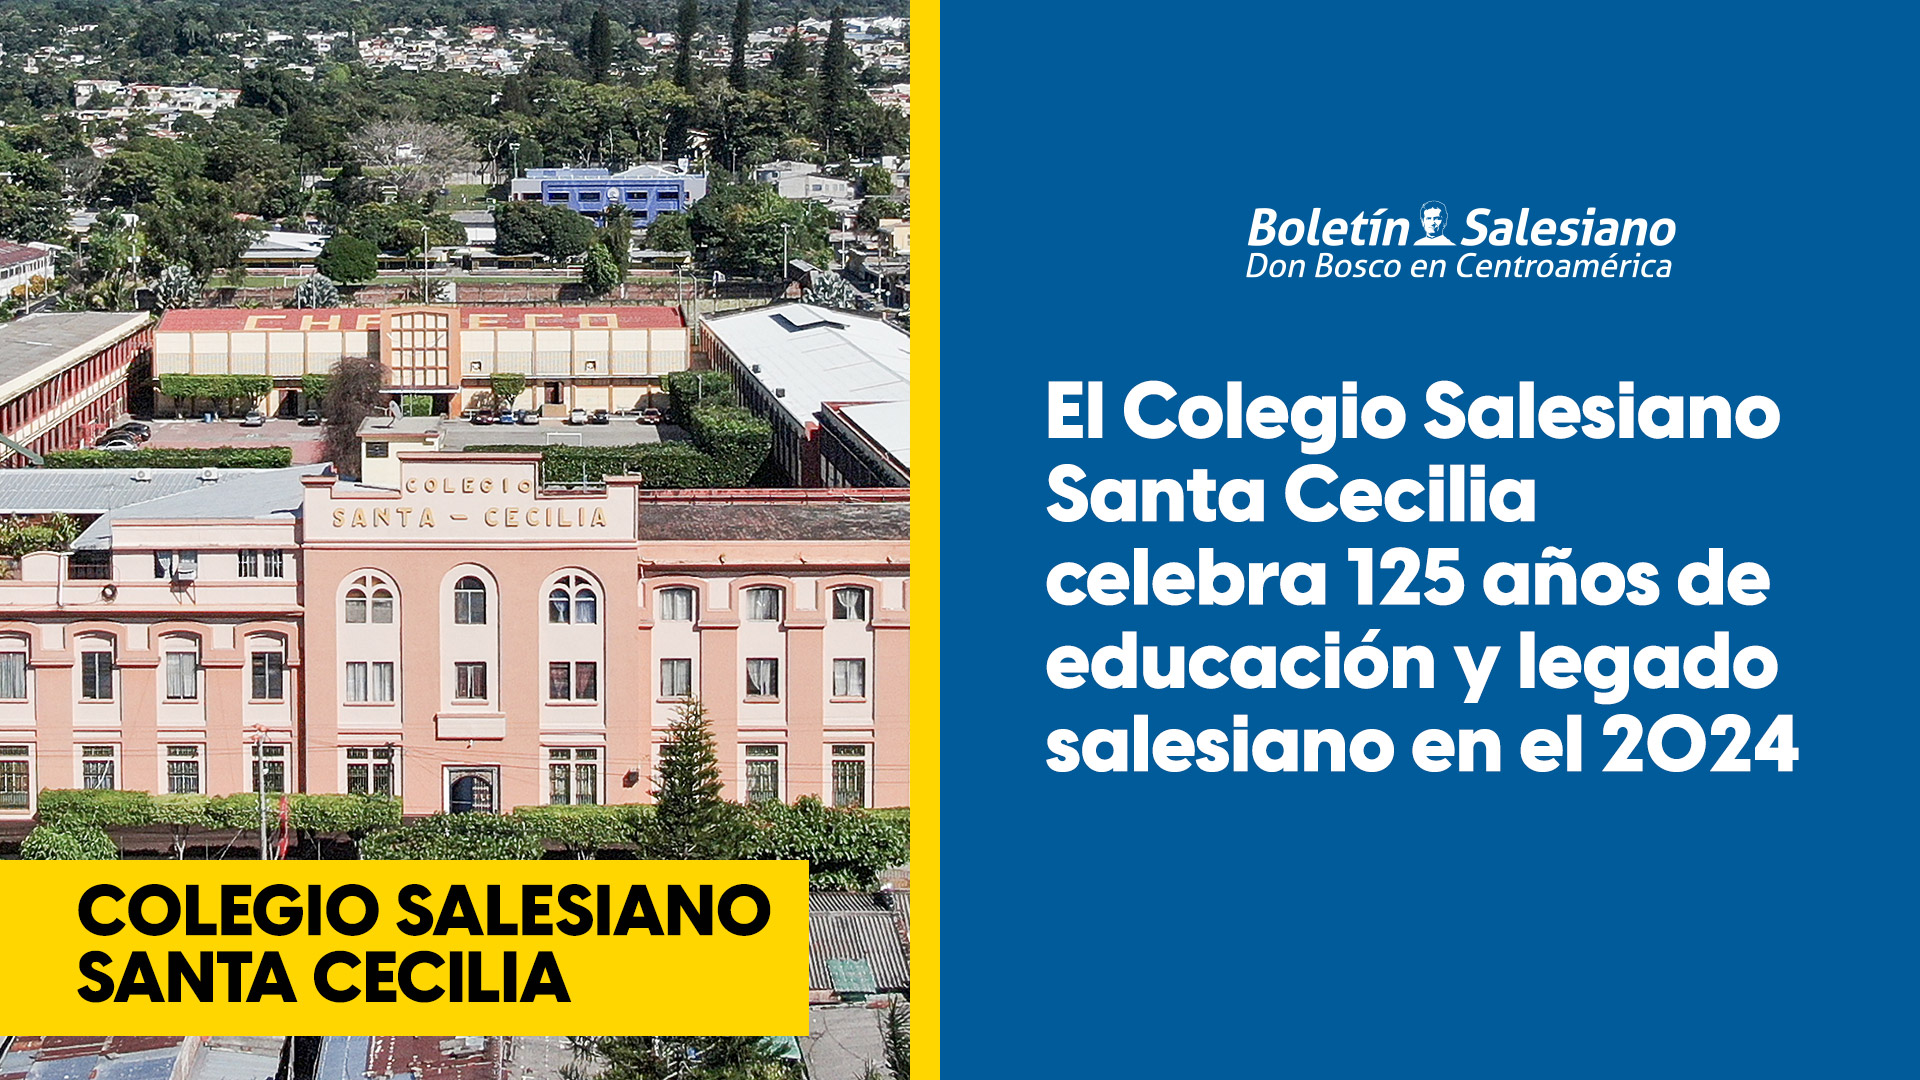 Con 125 años de historia, el Colegio Salesiano Santa Cecilia es un elemento emblemático educativo y espiritual que forma parte de la historia de la ciudad de Santa Tecla.